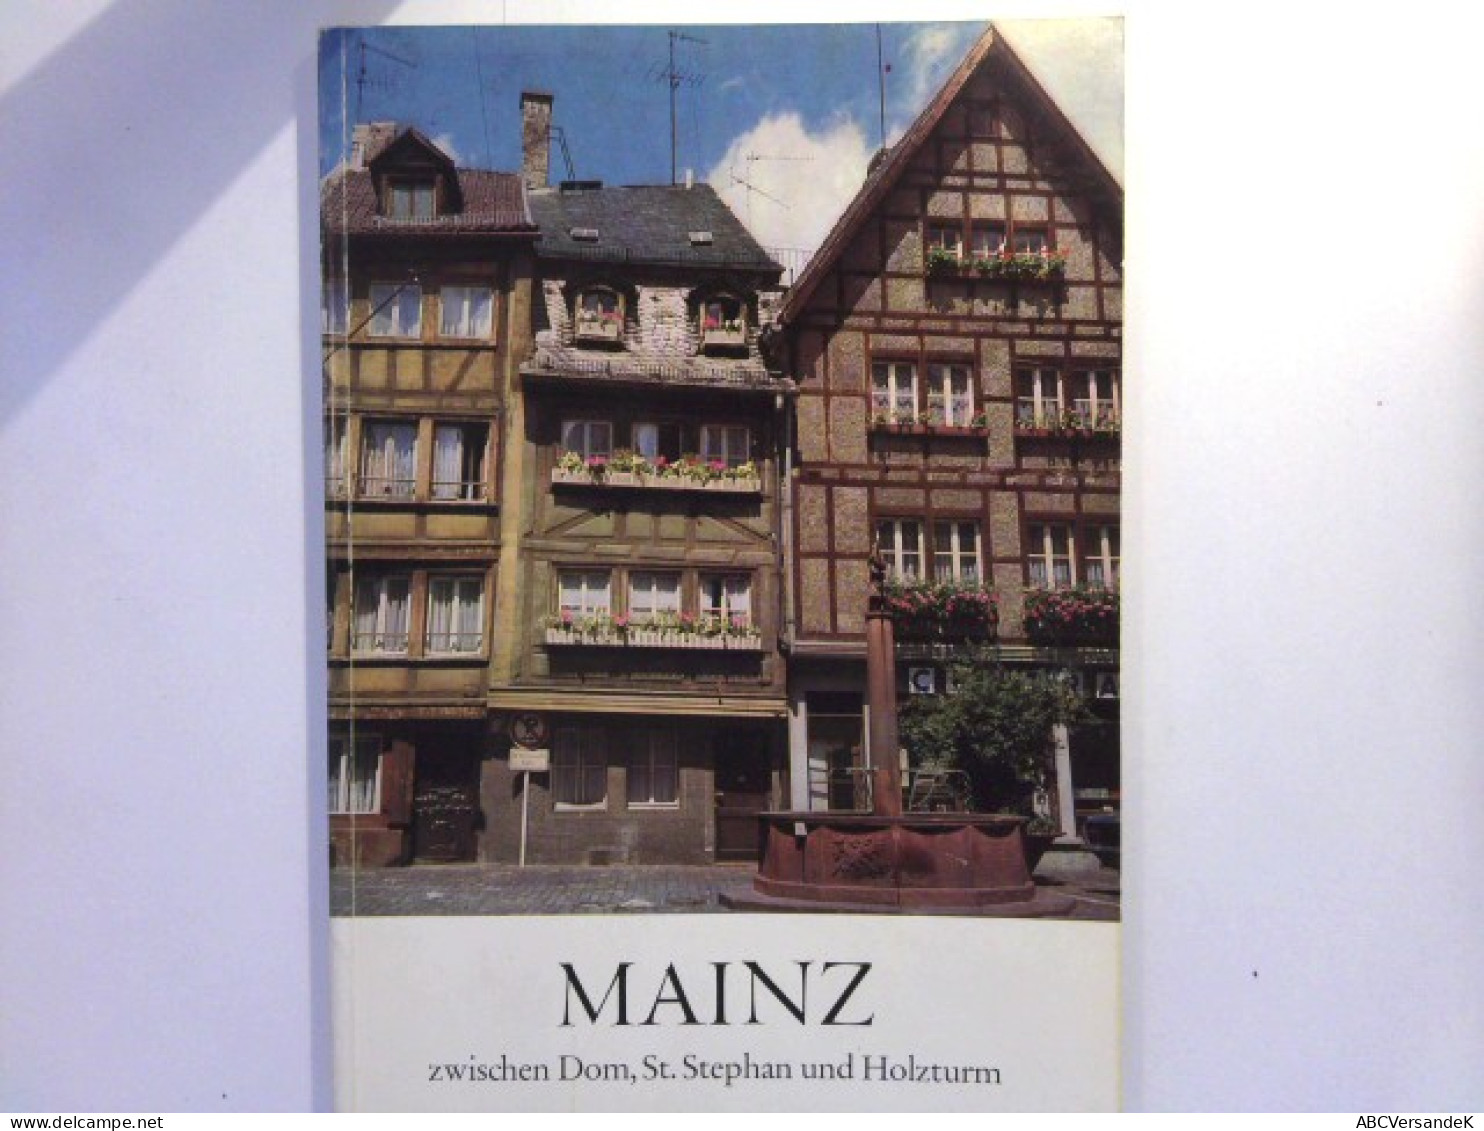 Mainz Zwischen Dom, St. Stephan Und Holzturm - Ein Führer Durch Die Mainzer Altstadt - Allemagne (général)